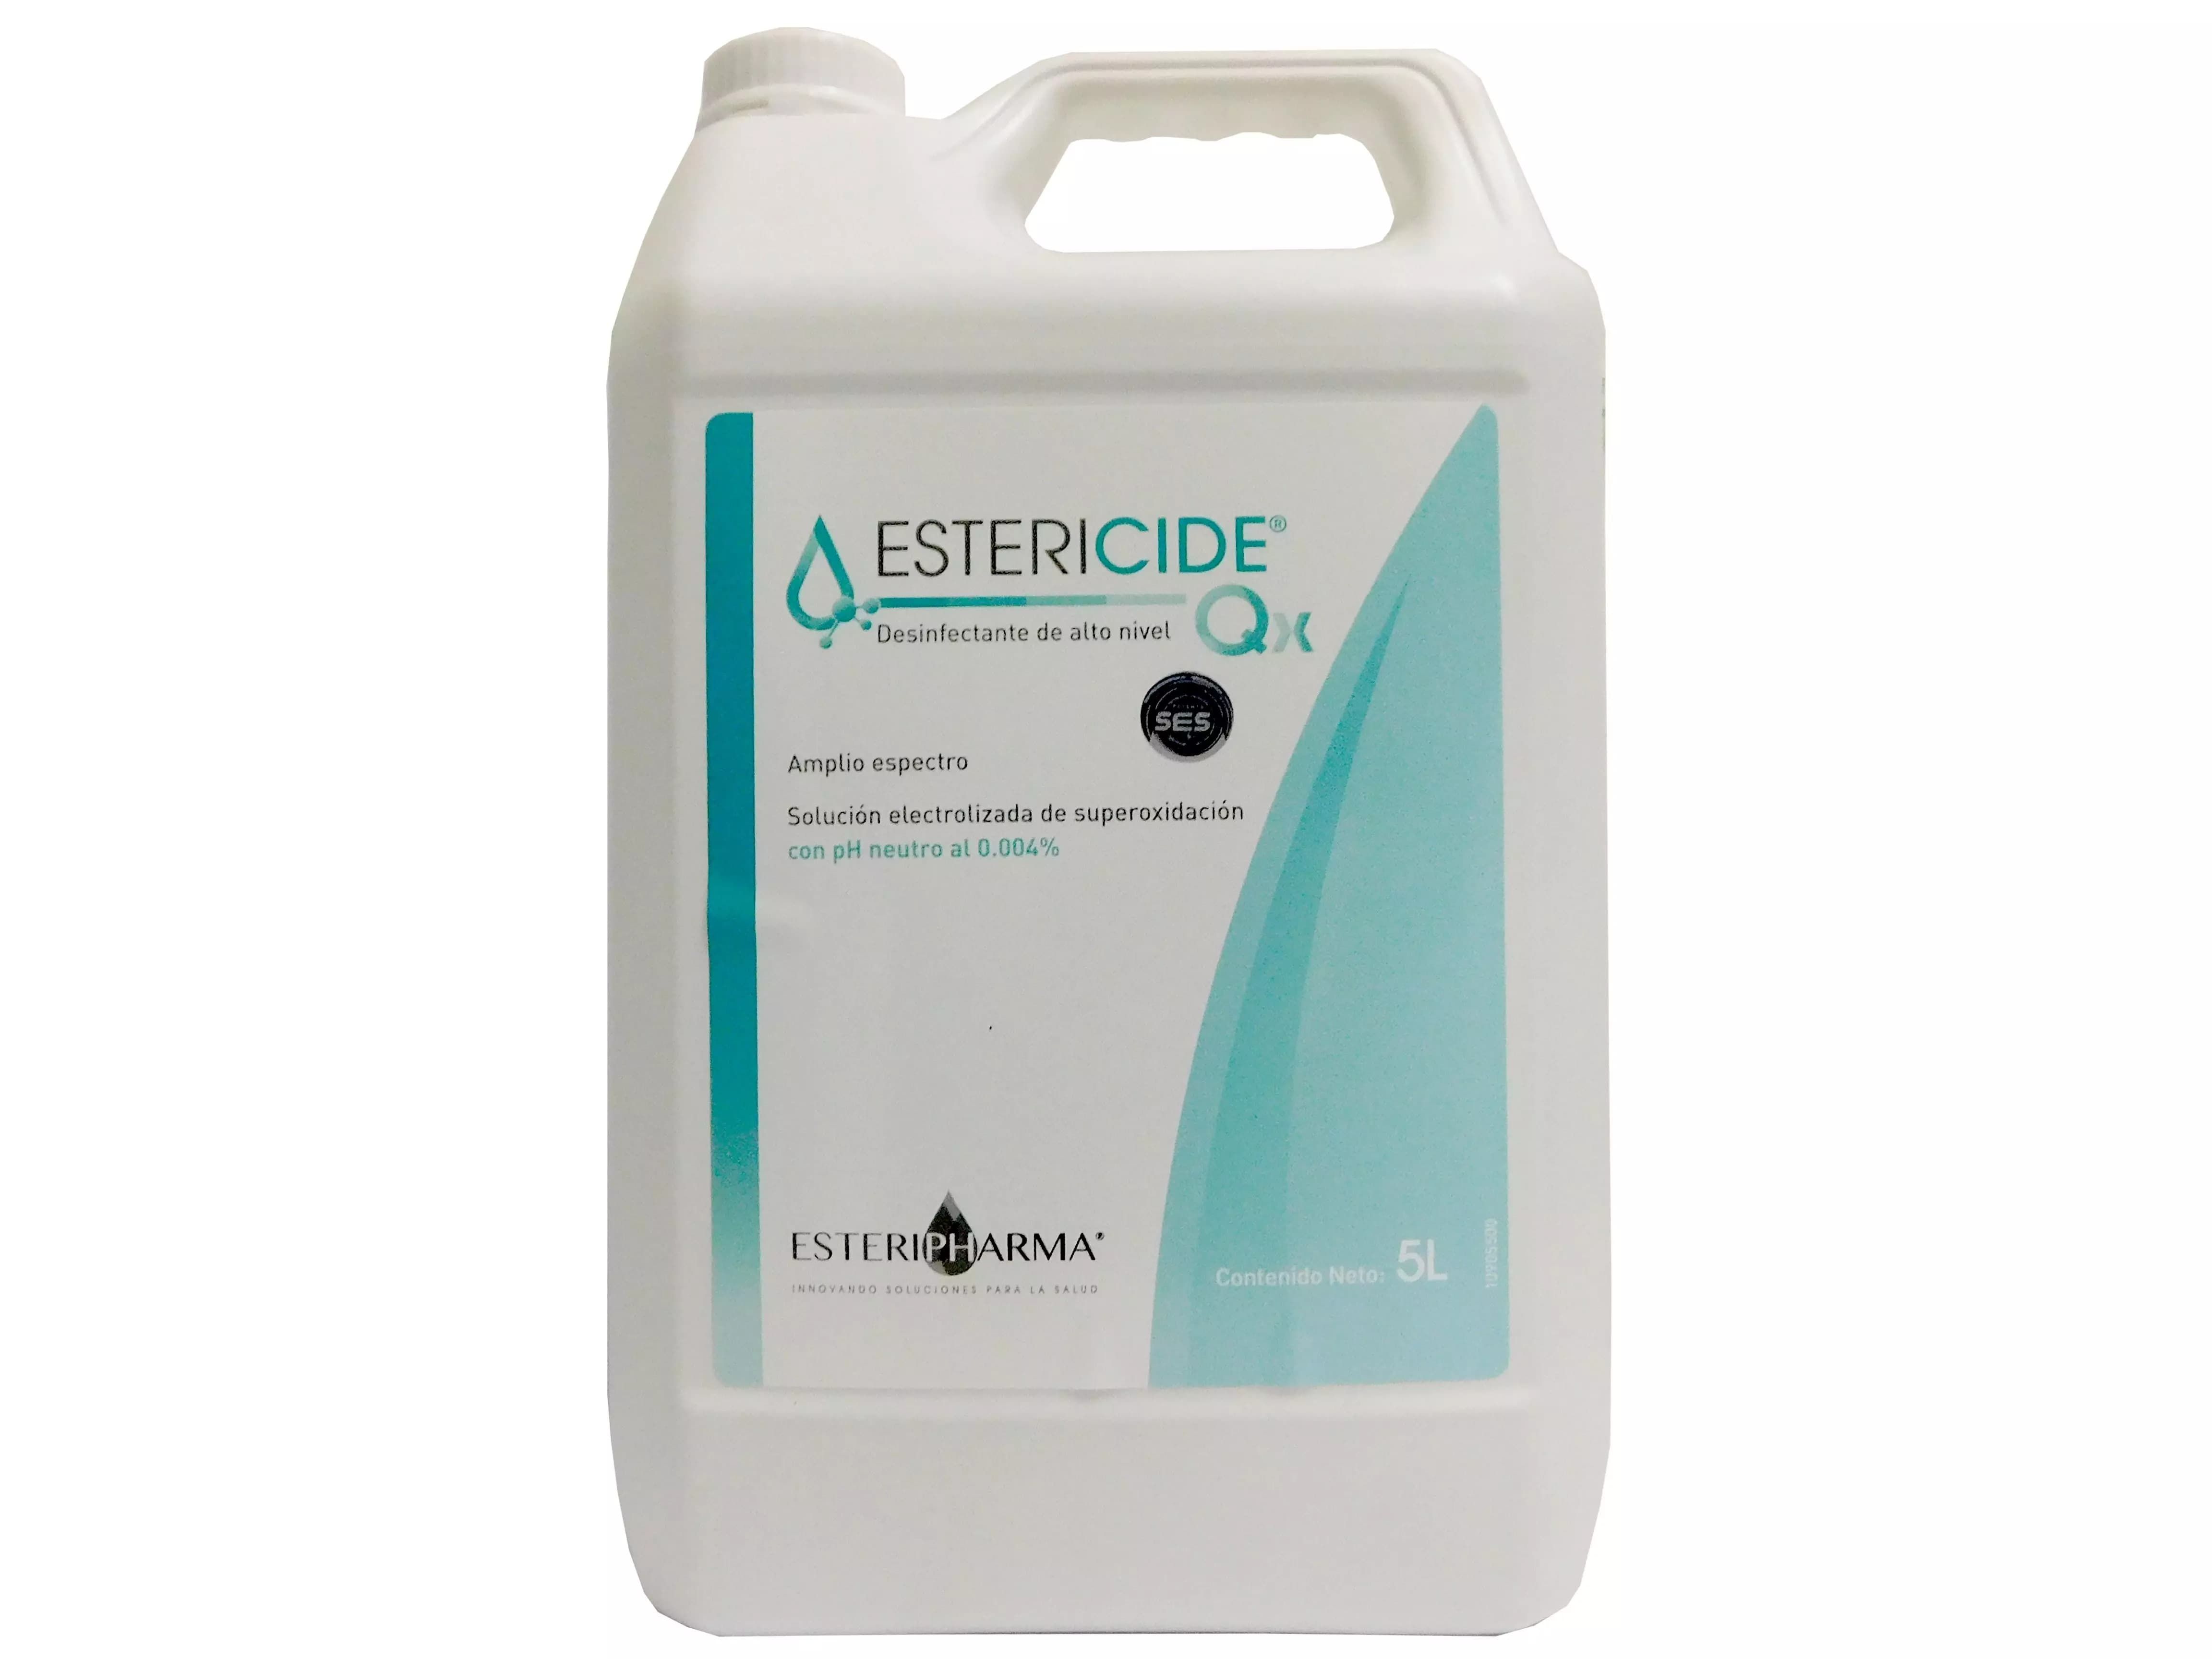 Precio Estericide qx solución electrolizada 5 l | Farmalisto MX